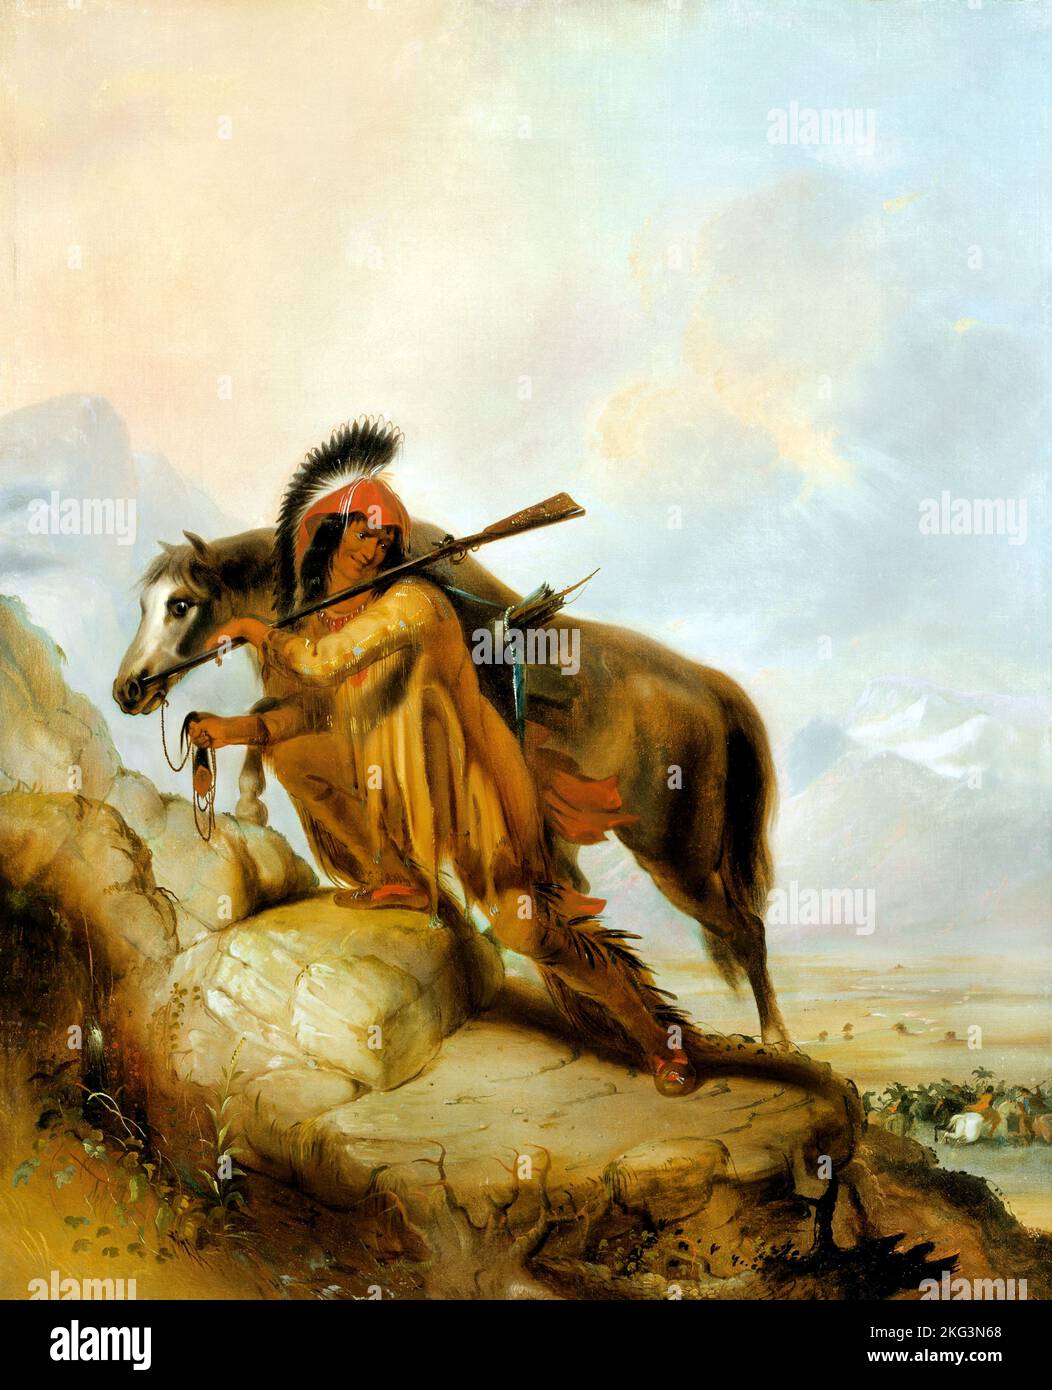 Alfred Jacob Miller; le Scalplock; Circa 1810-1874; huile sur toile; Musée d'art de Denver, ÉTATS-UNIS. Banque D'Images